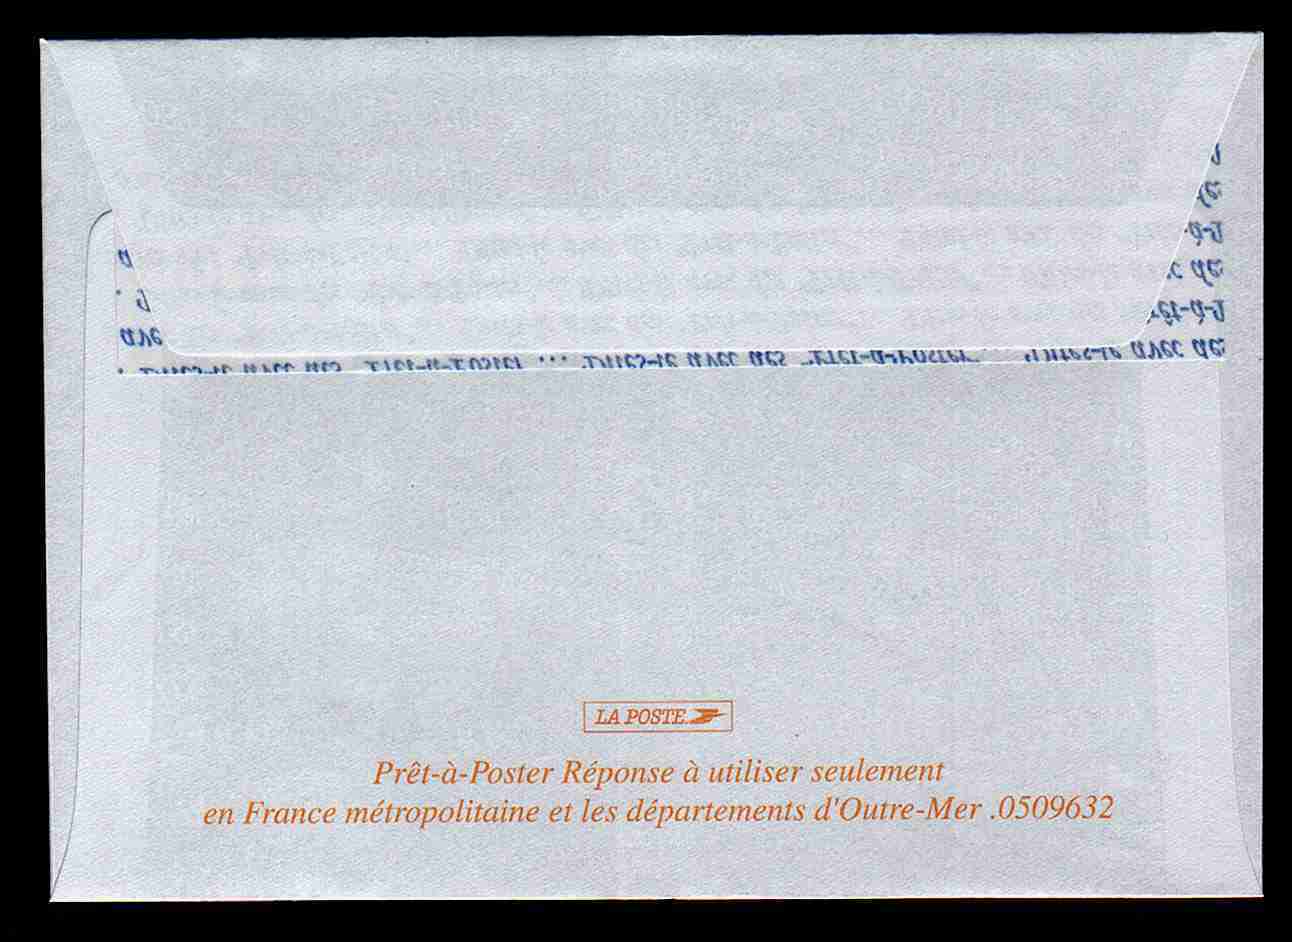 Entier Postal PAP Réponse Médecins Du Monde Autorisation 50138, N° Au Dos: 0509632 - PAP: Antwort/Lamouche